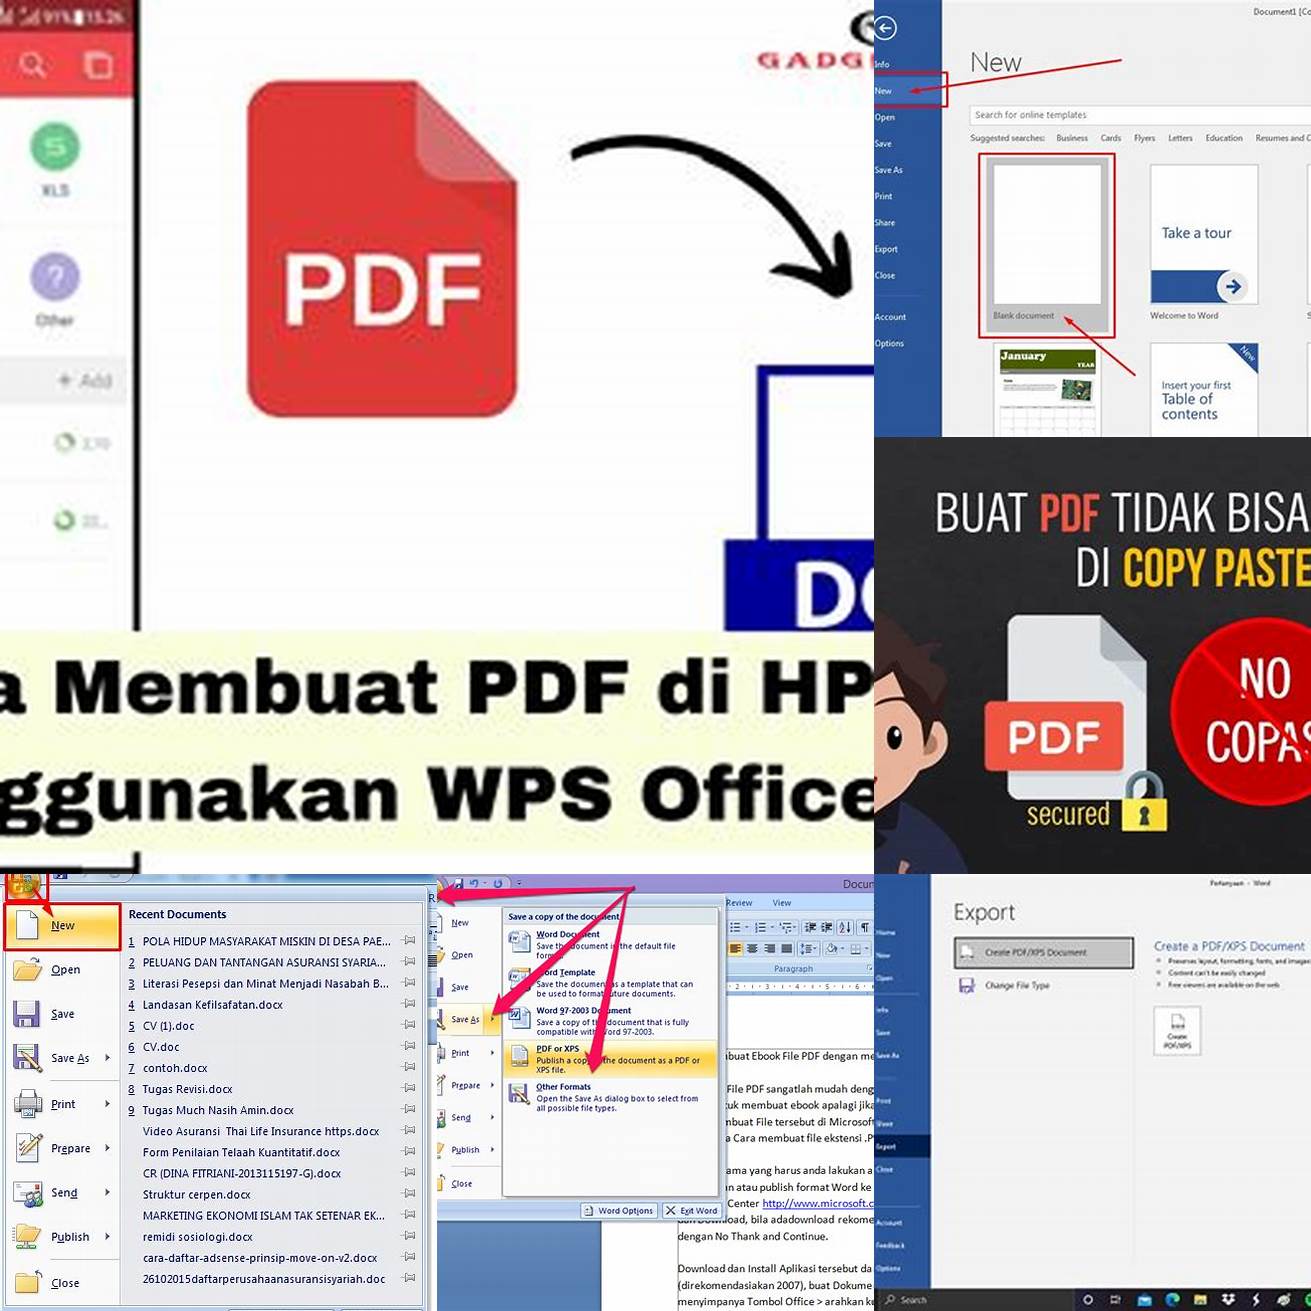 2 Pilih opsi untuk membuat PDF baru